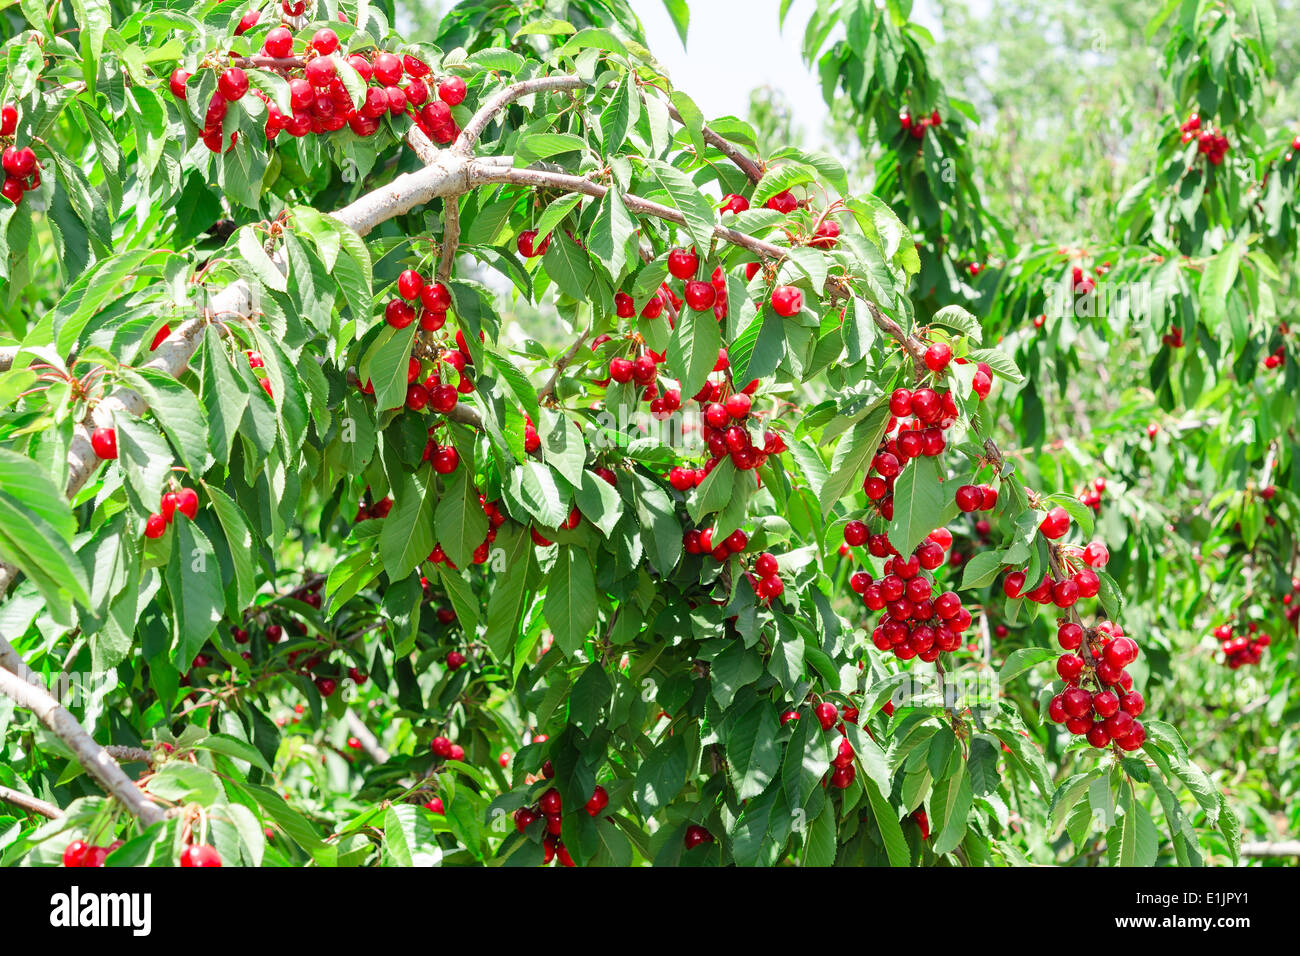 Cherry Berry soleggiato giardino frutteto albero con molti frutti rossi e lussureggiante fogliame Foto Stock